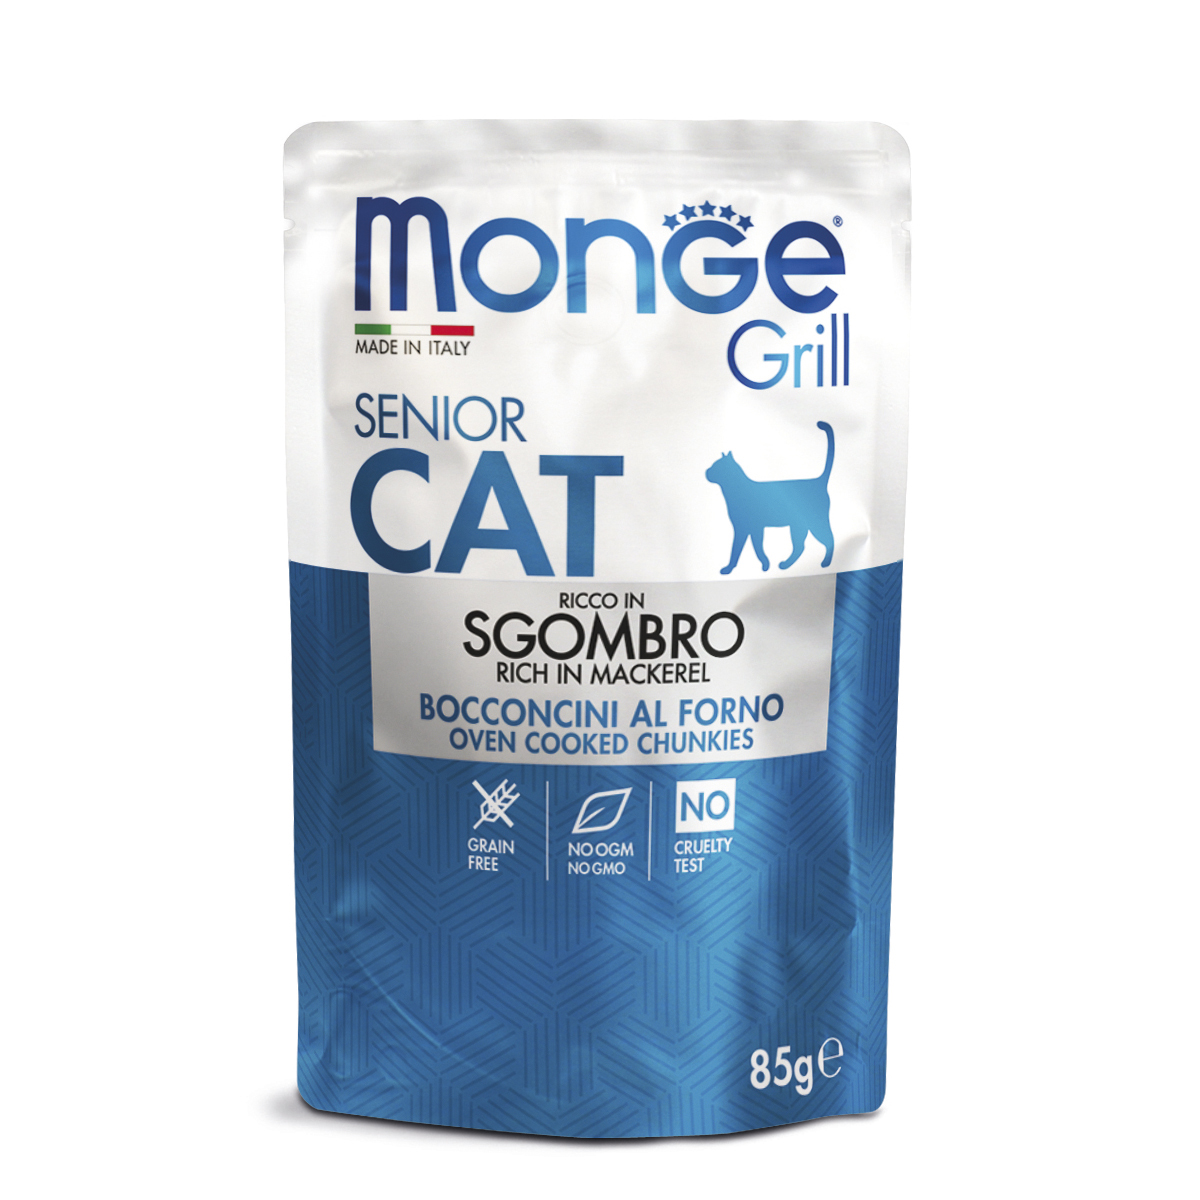 Влажный корм для кошек Monge Grill Senior, для пожилых, эквадорская макрель,